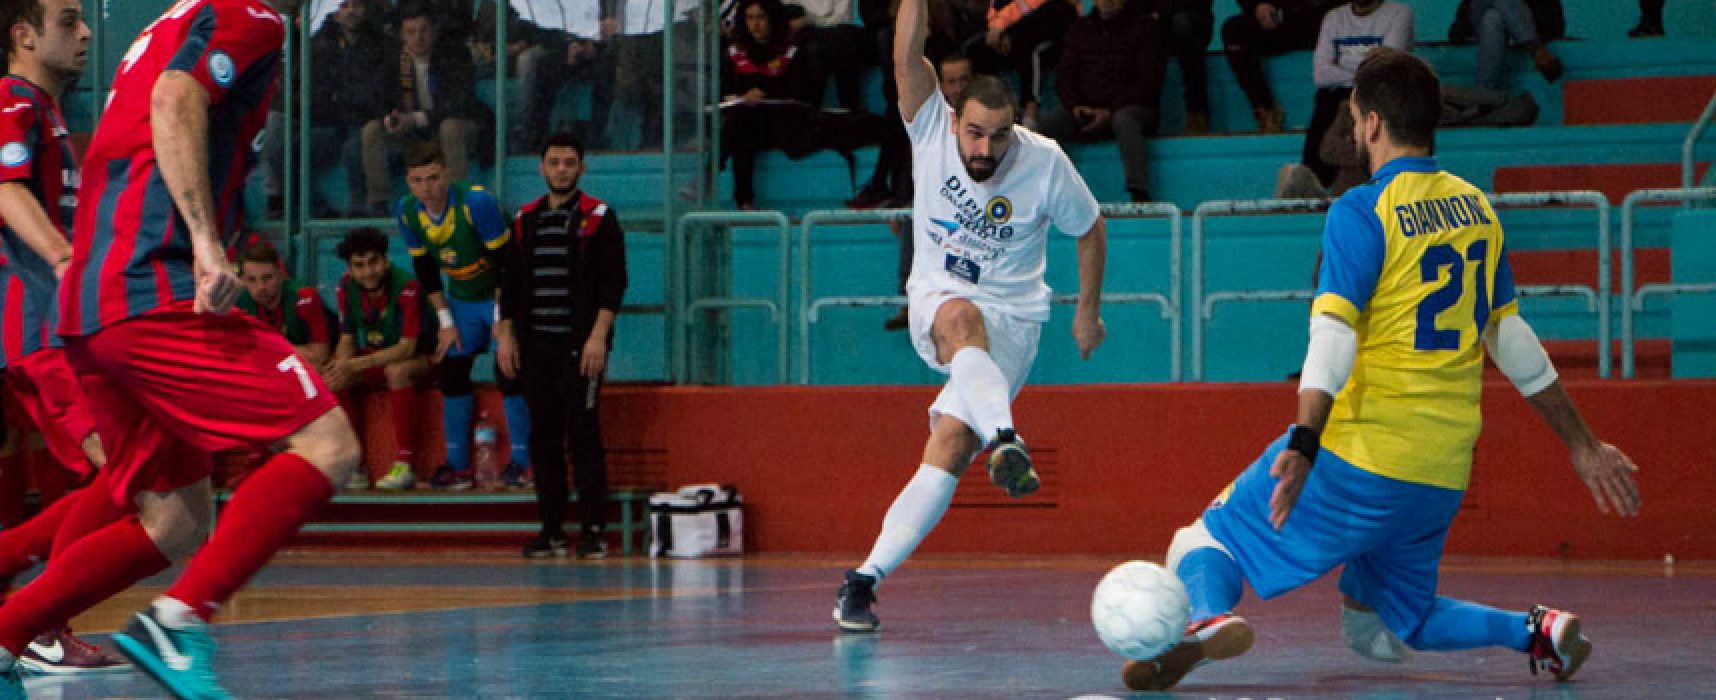 Futsal Bisceglie – Ciampino Anni Nuovi 5-4 / VIDEO HIGHLIGHTS